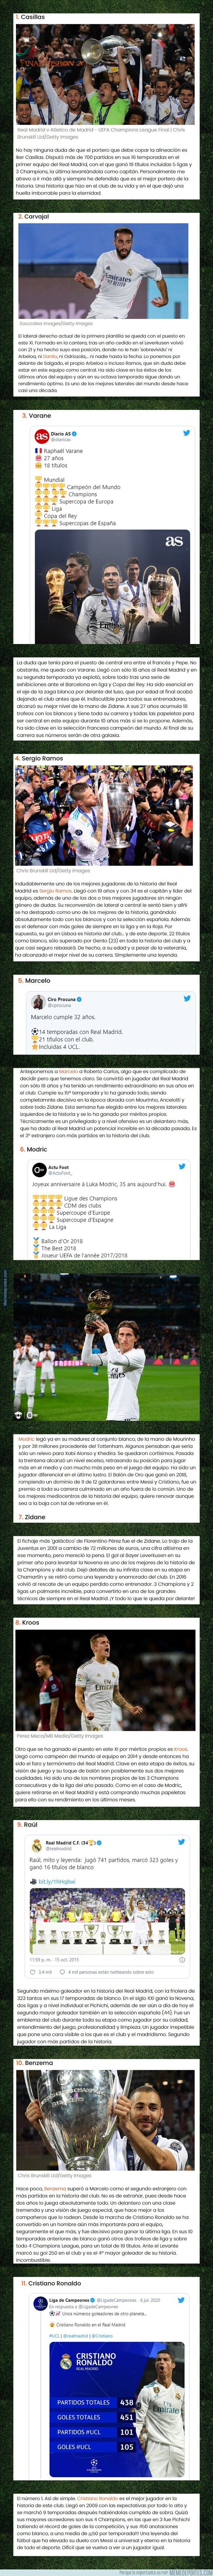 1117565 - Este es el mejor equipo e ideal del Real Madrid en el siglo XXI